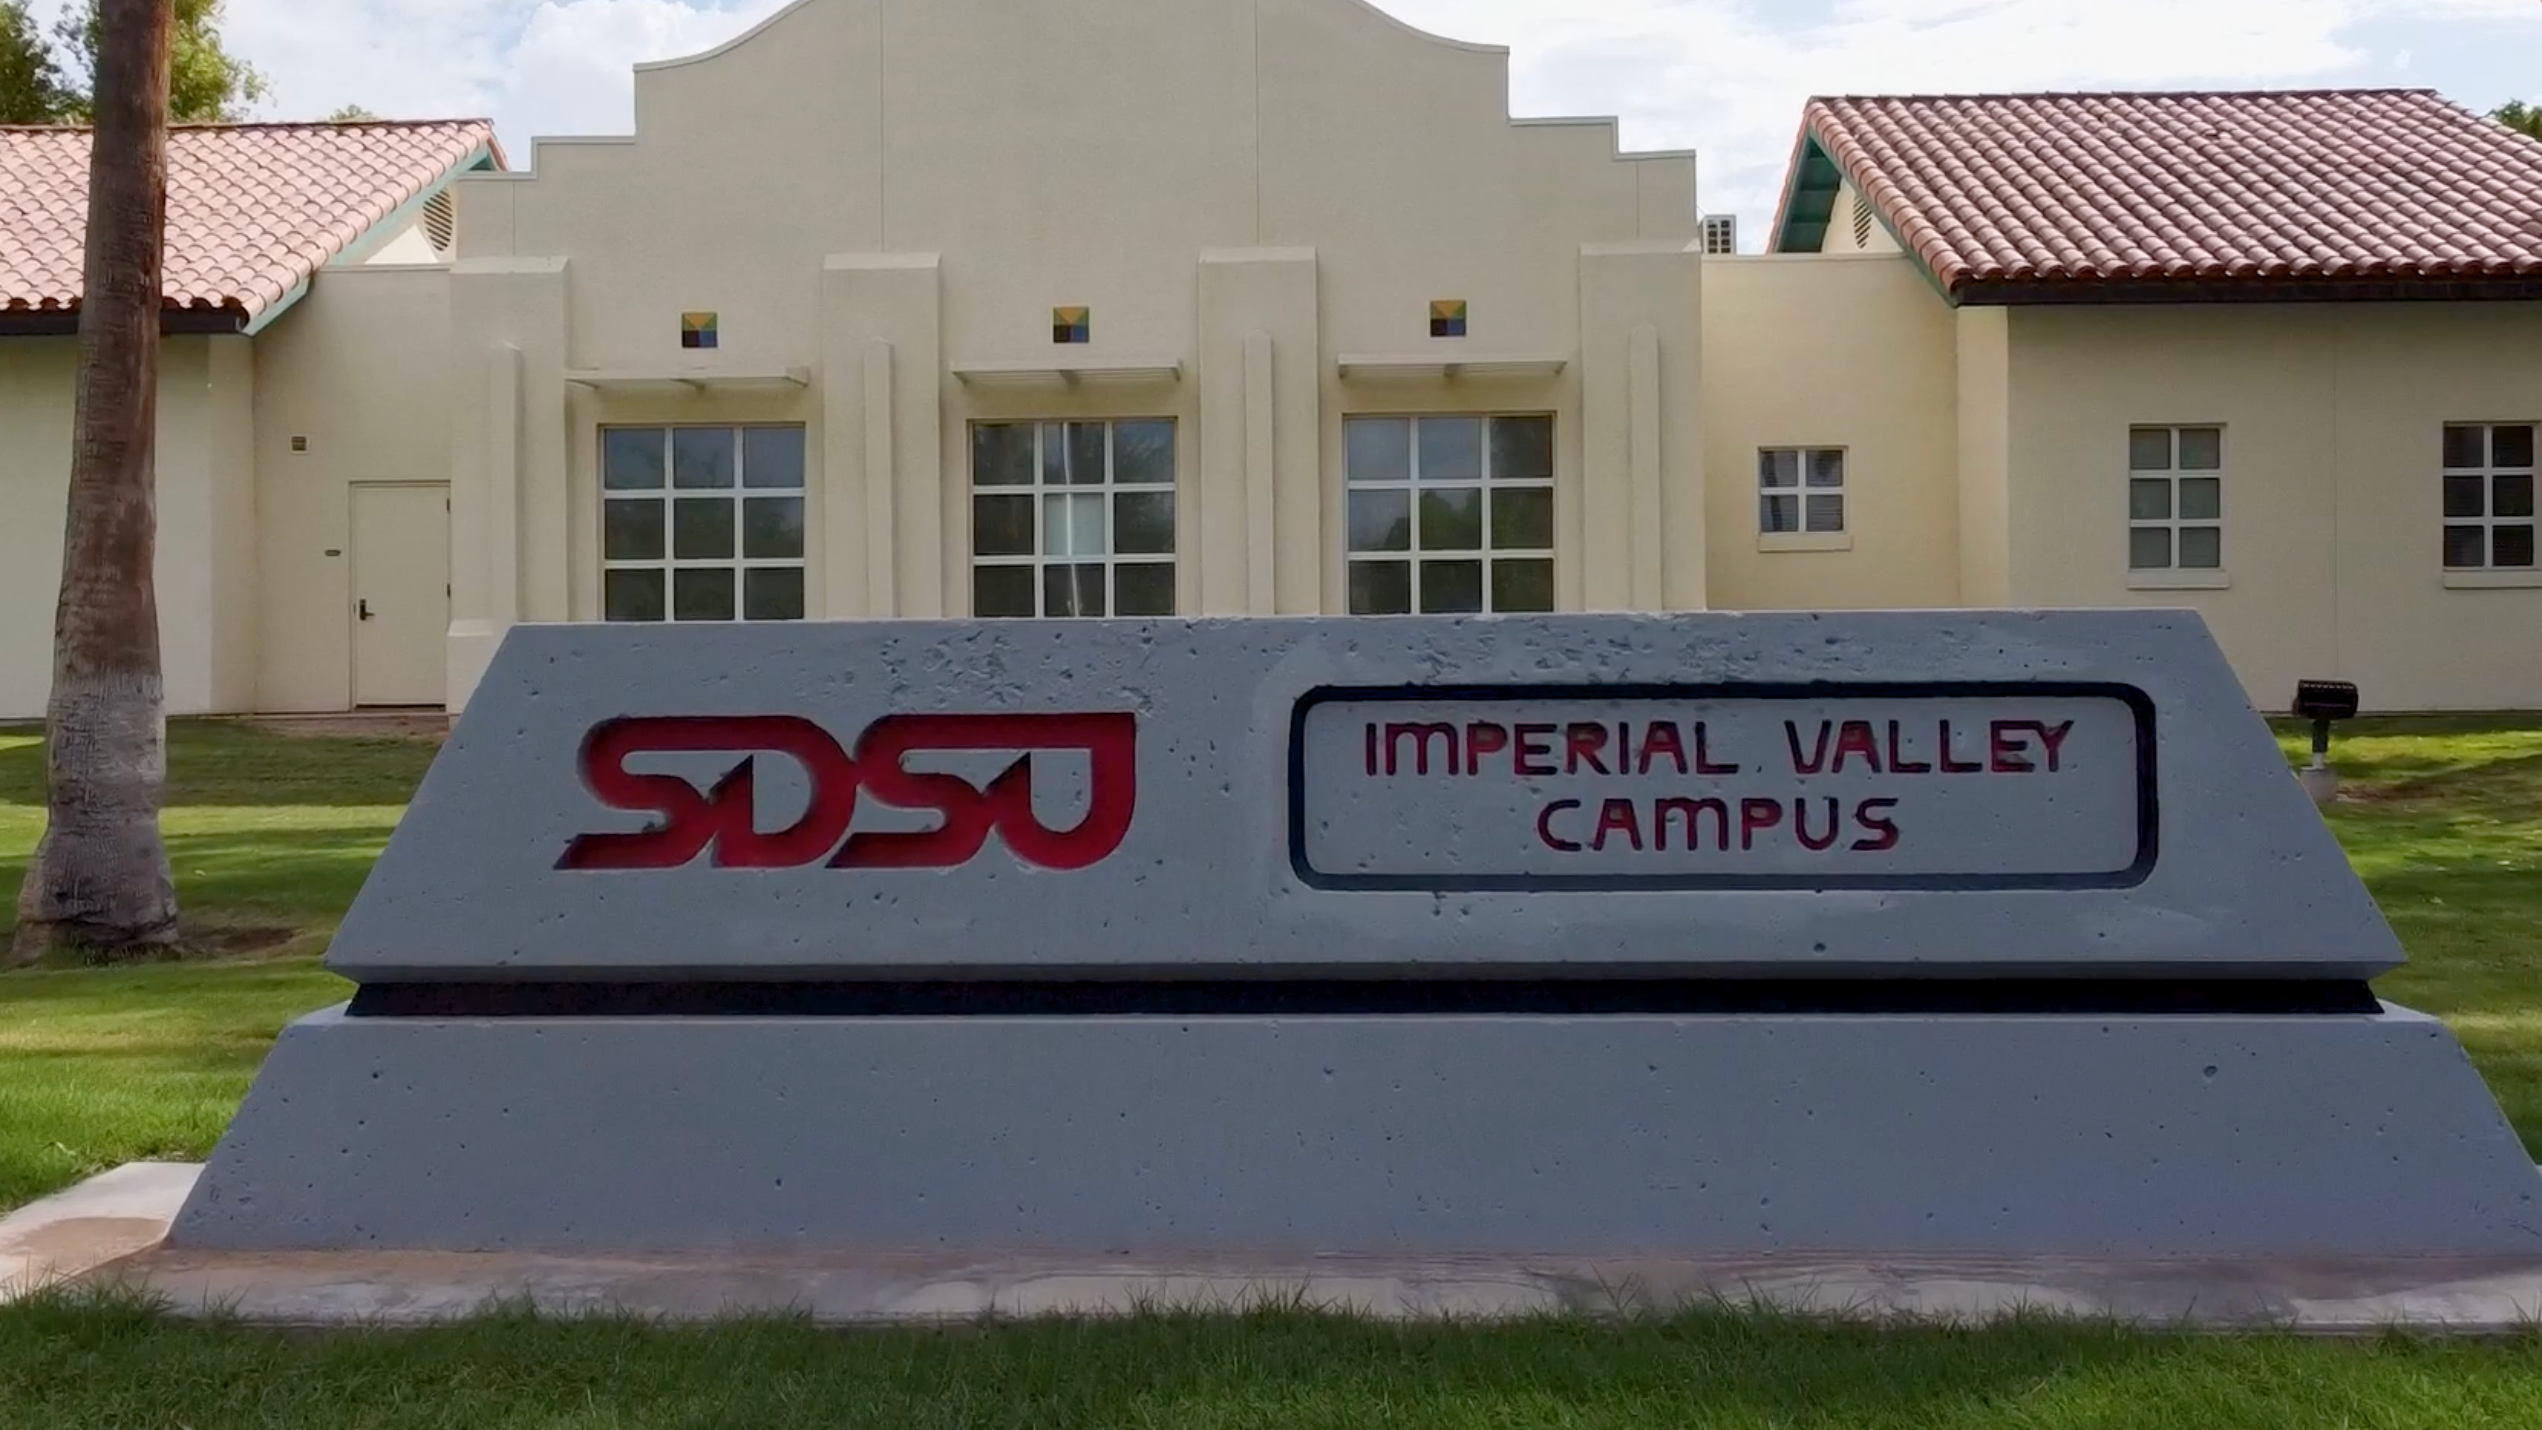 SDSU Imperial Valley Campus